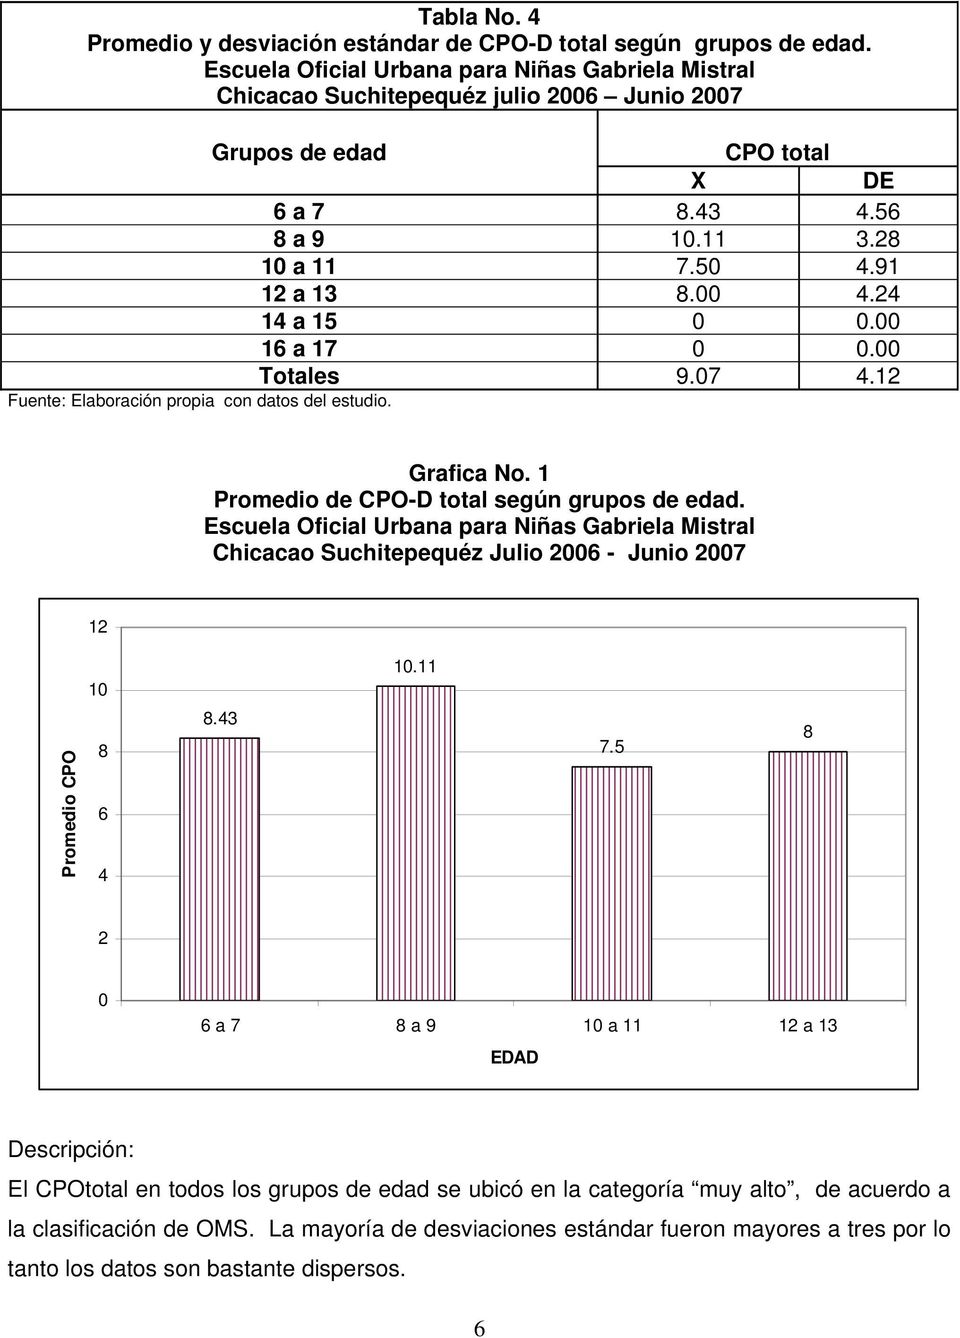 24 14 a 15 0 0.00 16 a 17 0 0.00 Totales 9.07 4.12 Fuente: Elaboración propia con datos del estudio. Grafica No. 1 Promedio de CPO-D total según grupos de edad.